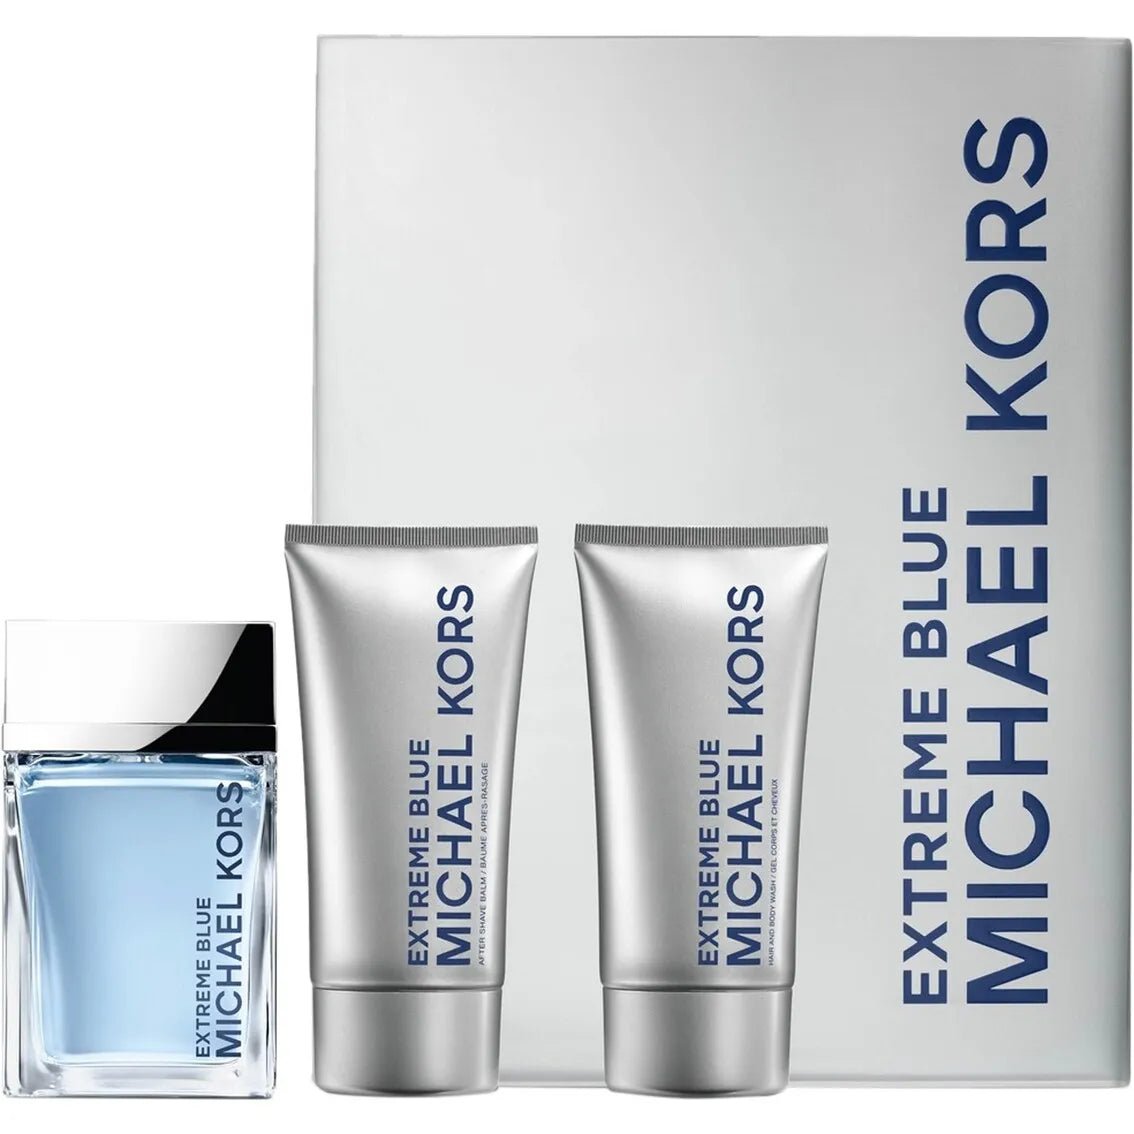 Michael Kors Extreme Blue EDT Aftershave Set